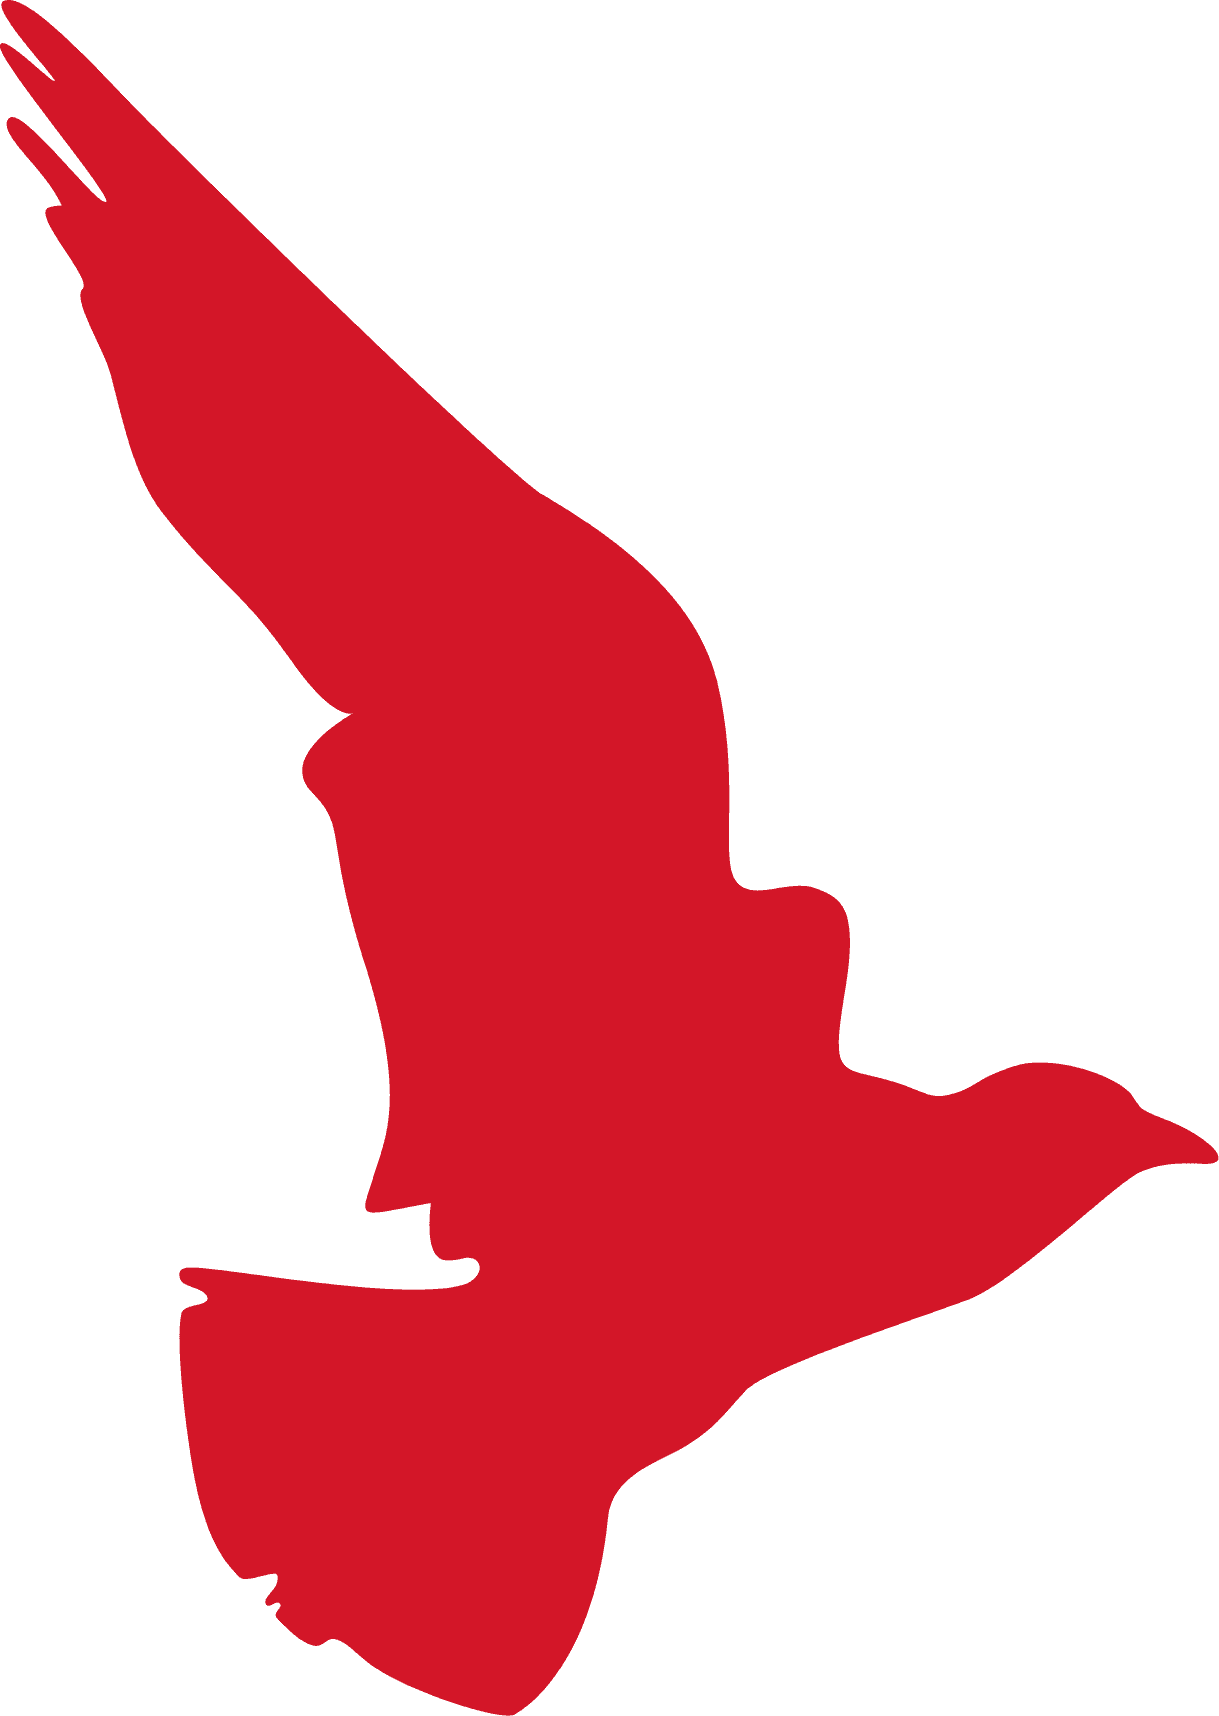 Skylar Media - Red Bird